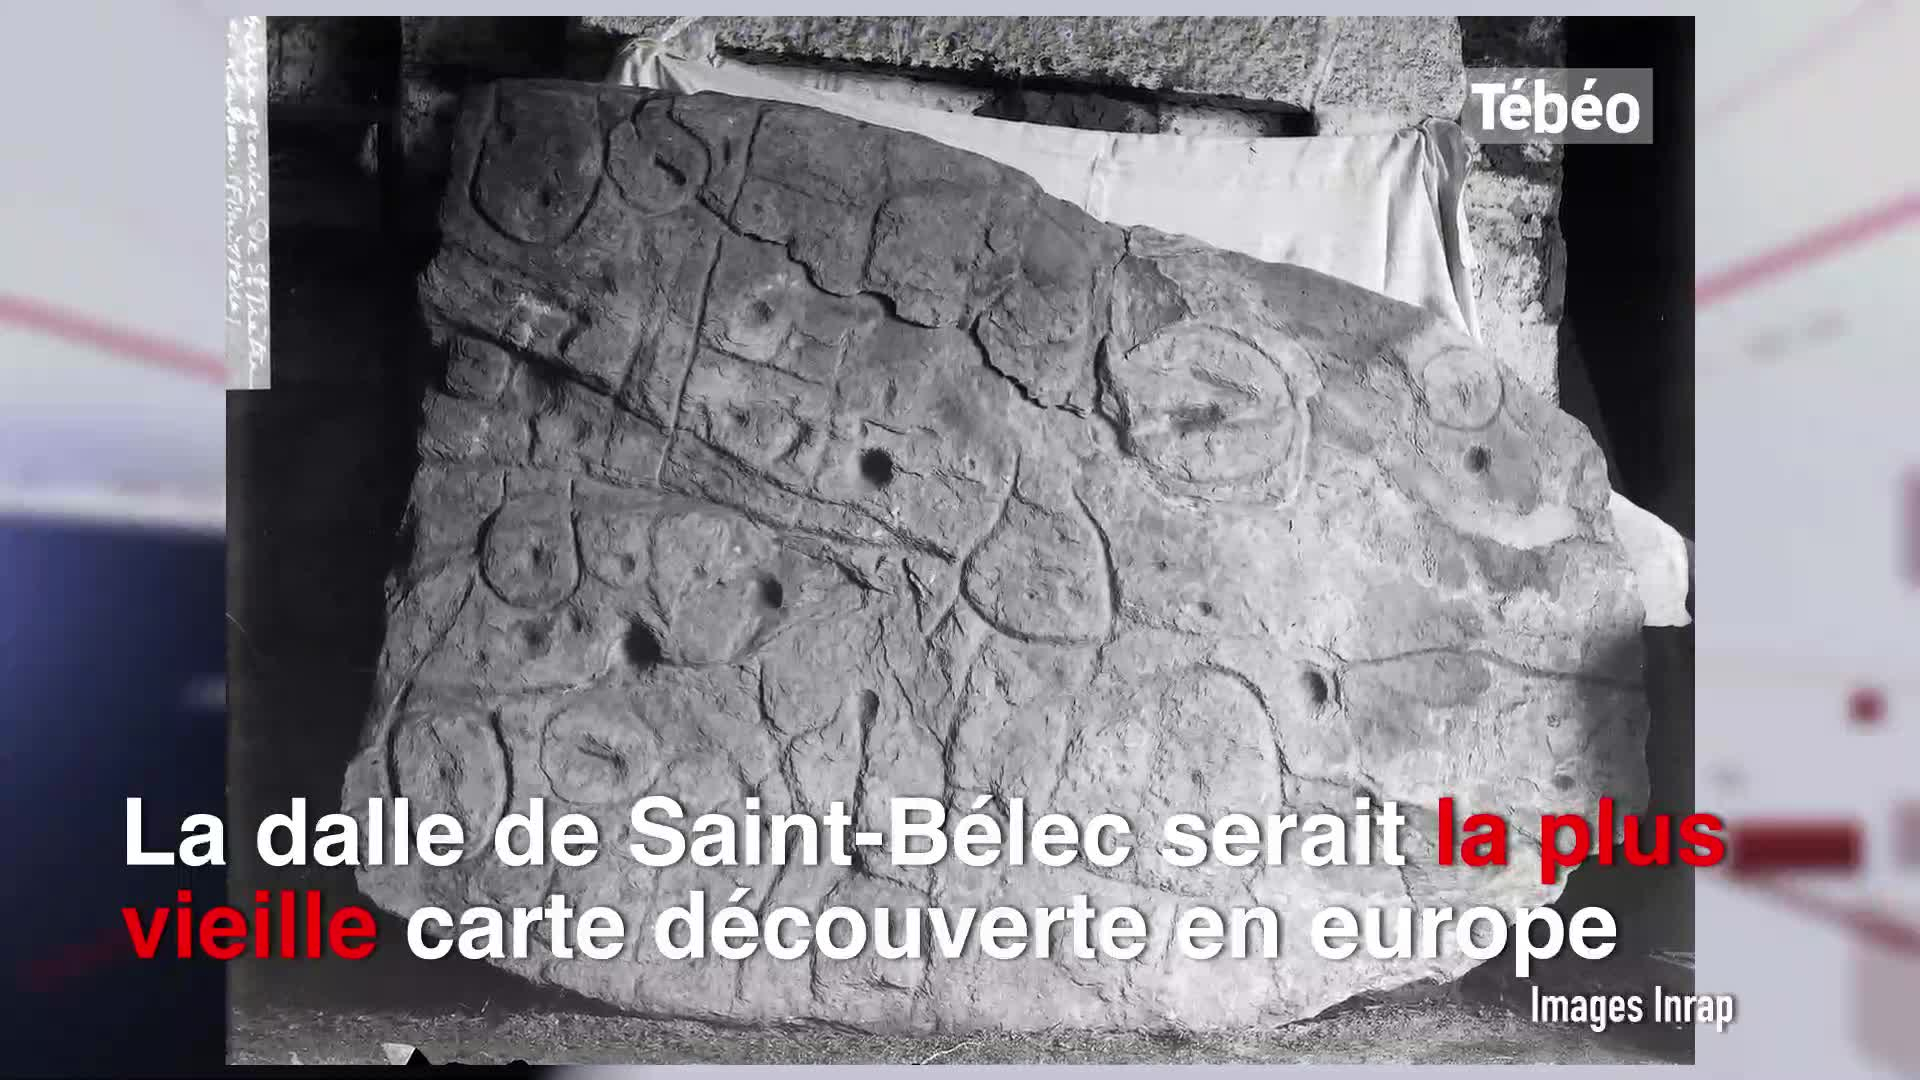 La plus vieille carte d'europe est bretonne (Tébéo-TébéSud)